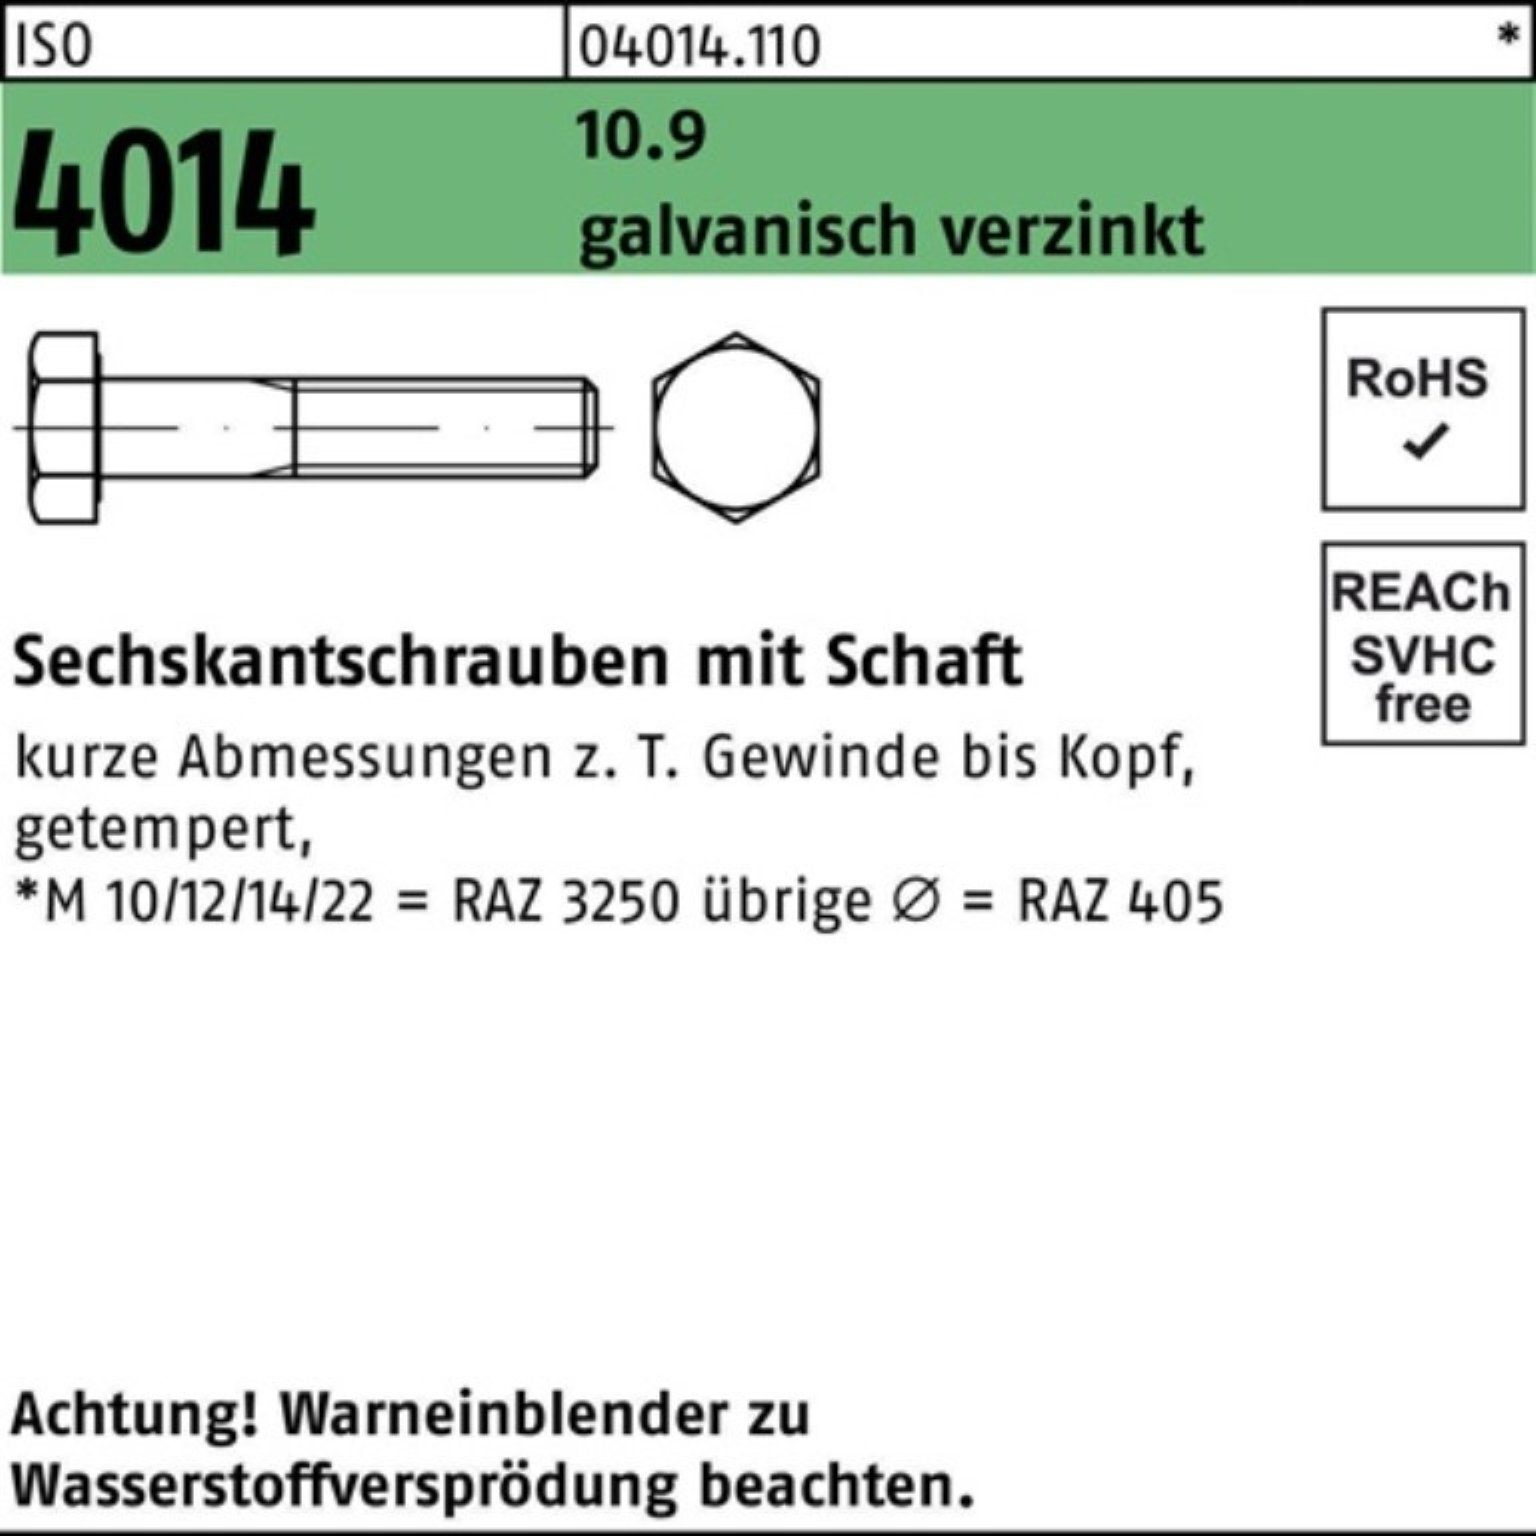 galv.verz. Bufab 100er Pack Sechskantschraube 4014 ISO 190 Sechskantschraube M12x 10.9 Schaft